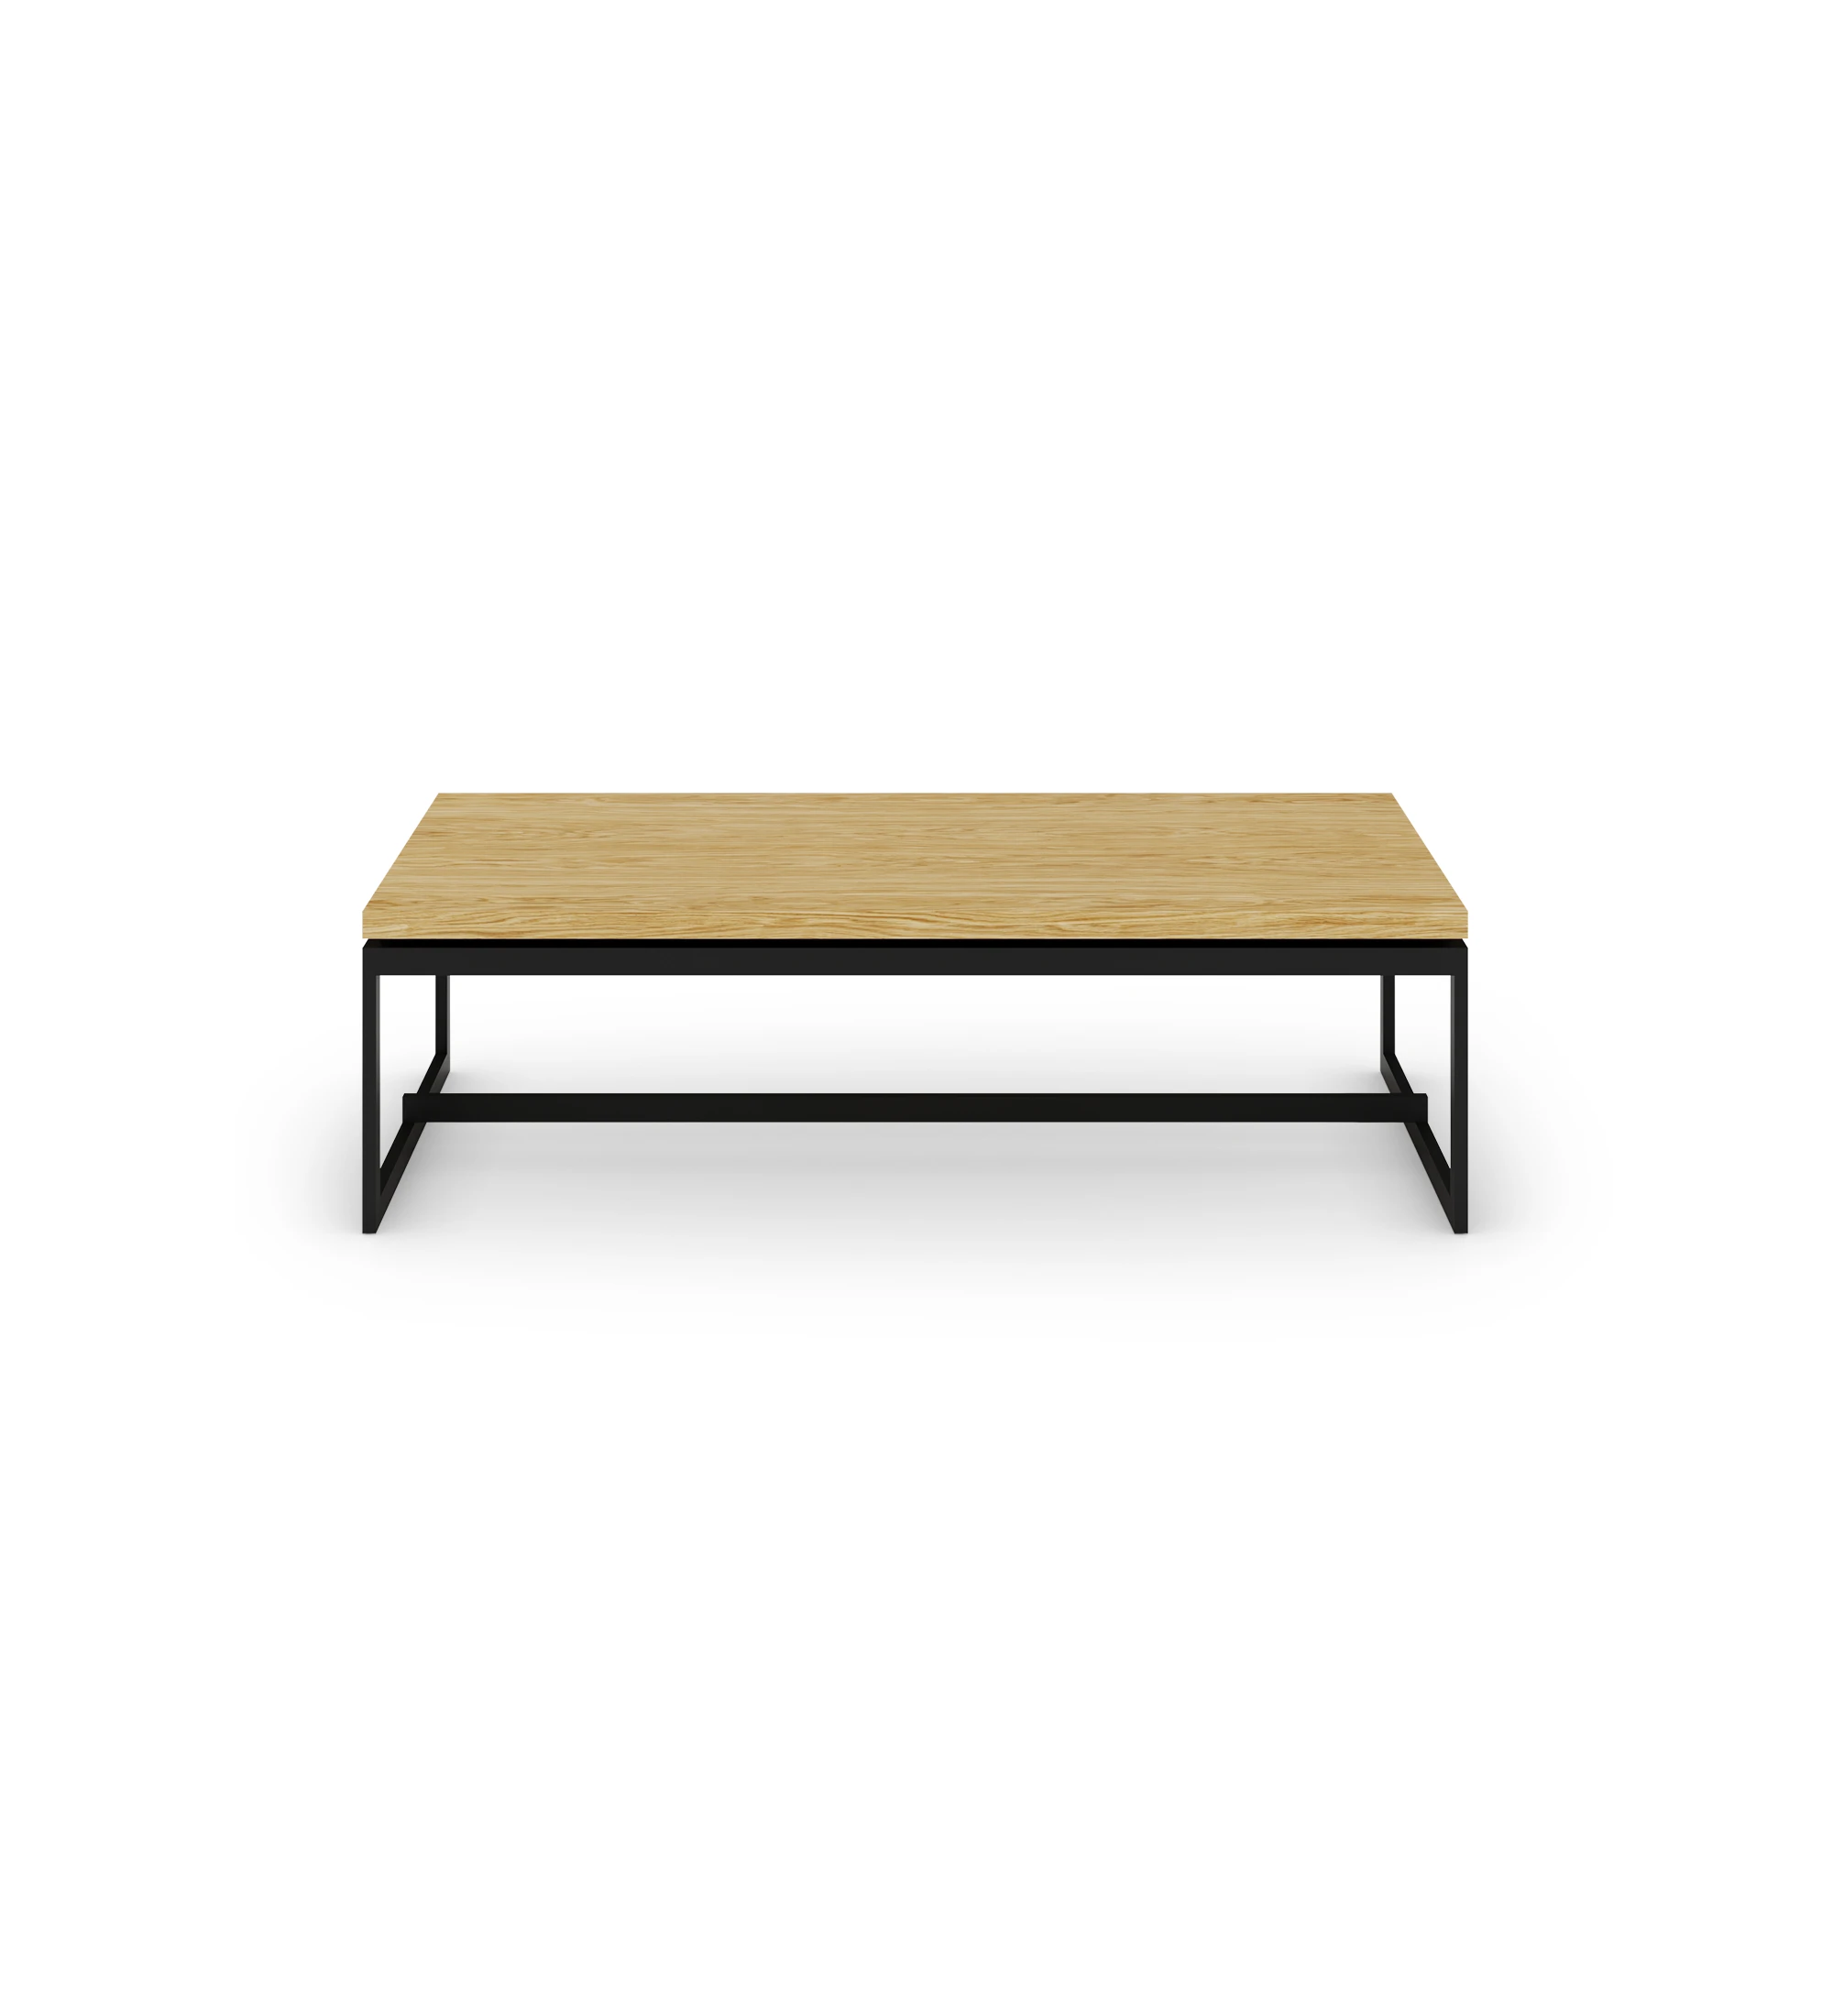 Table basse rectangulaire avec plateau en chêne naturel et pieds en métal laqué noir